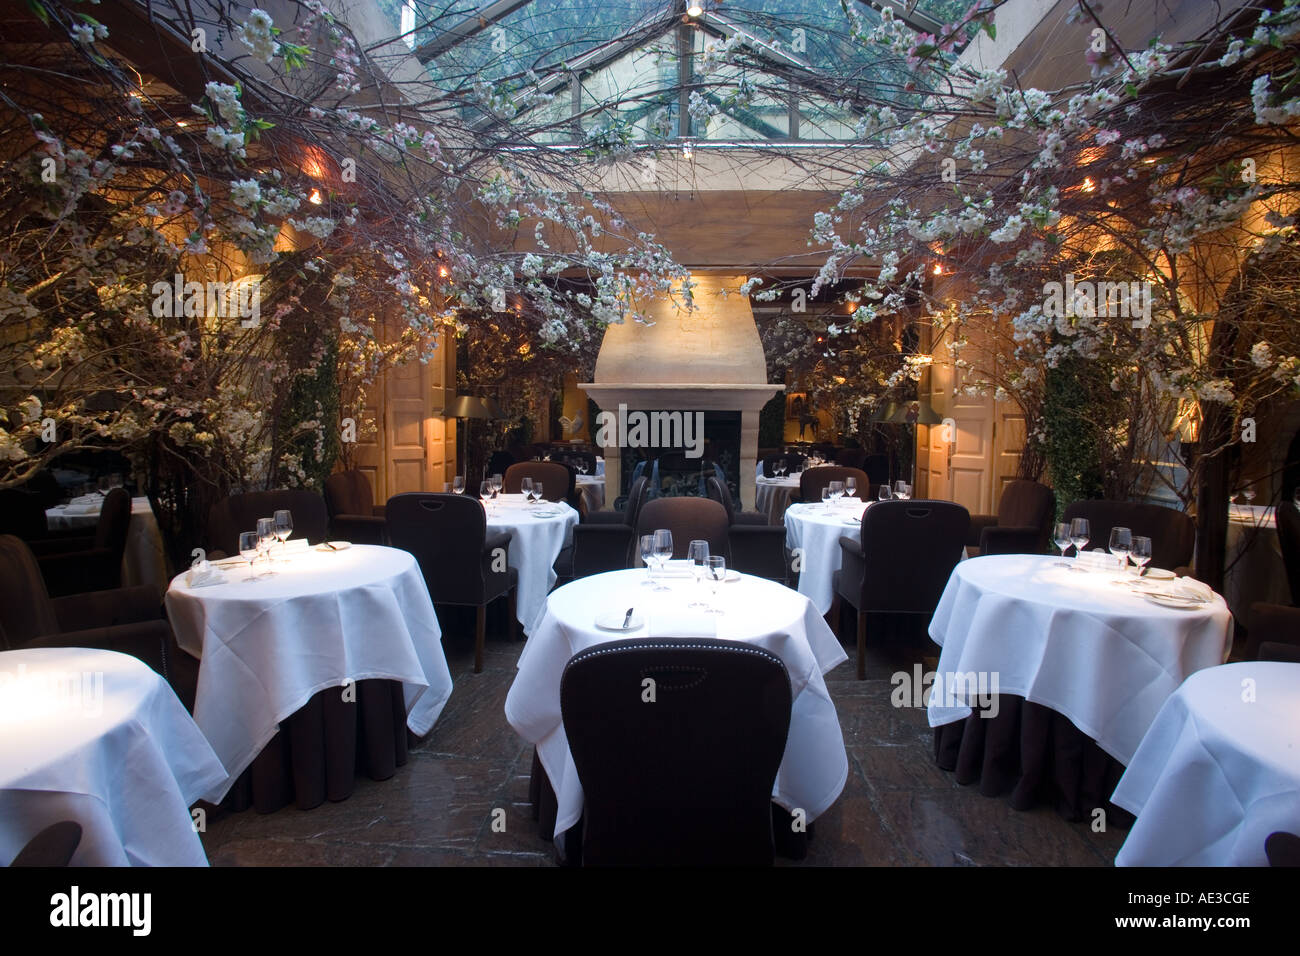 Clos Maggiore Restaurant Covent Garden London Stock Photo